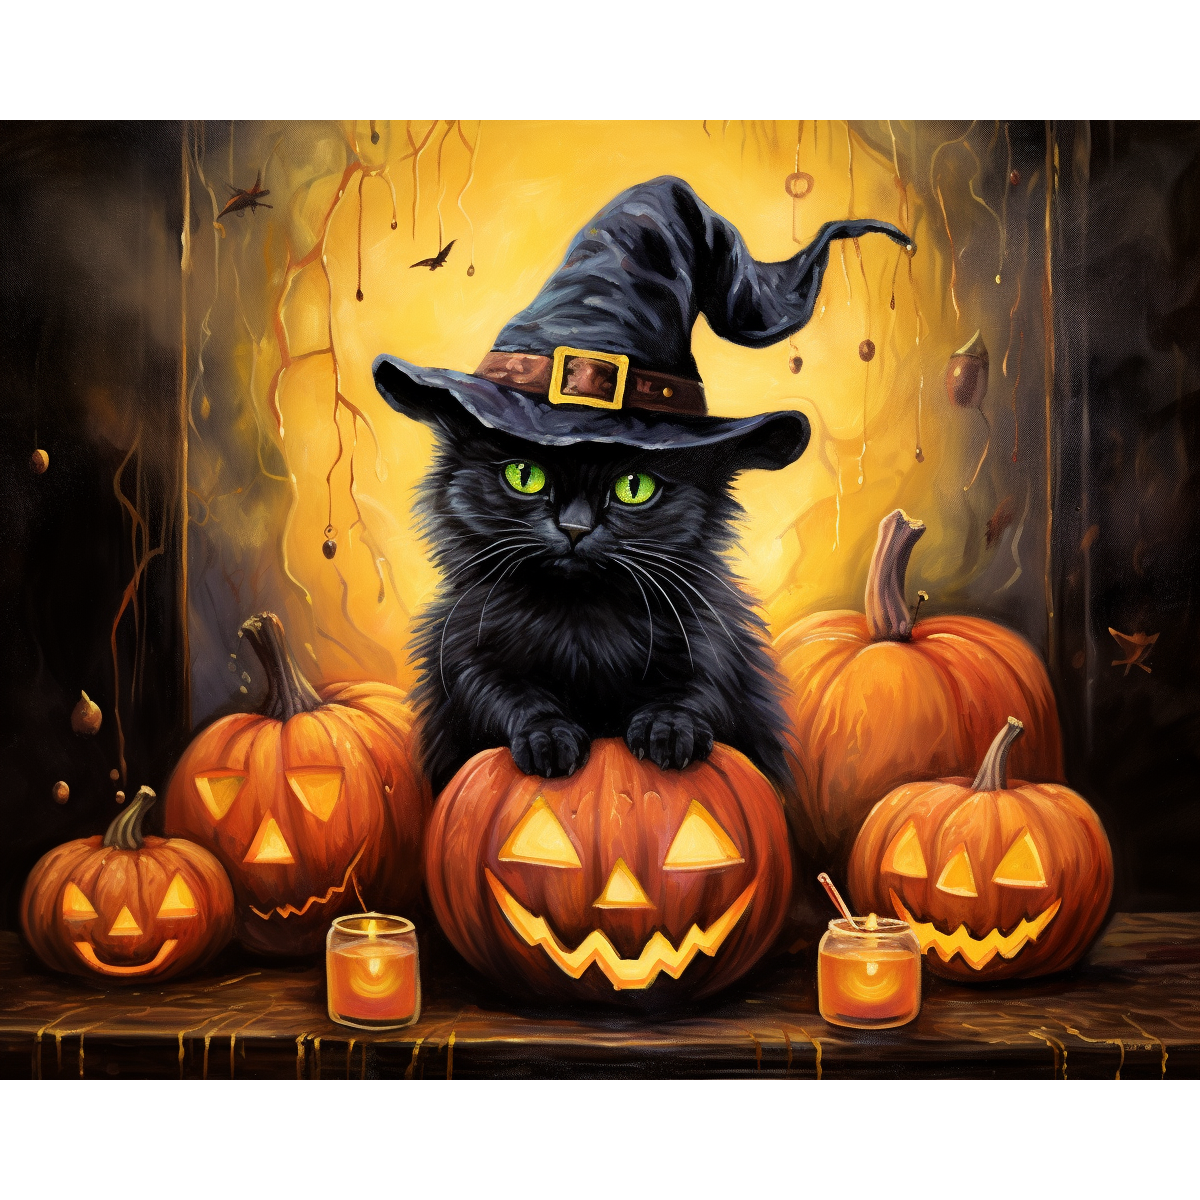 Black Cat's Halloween